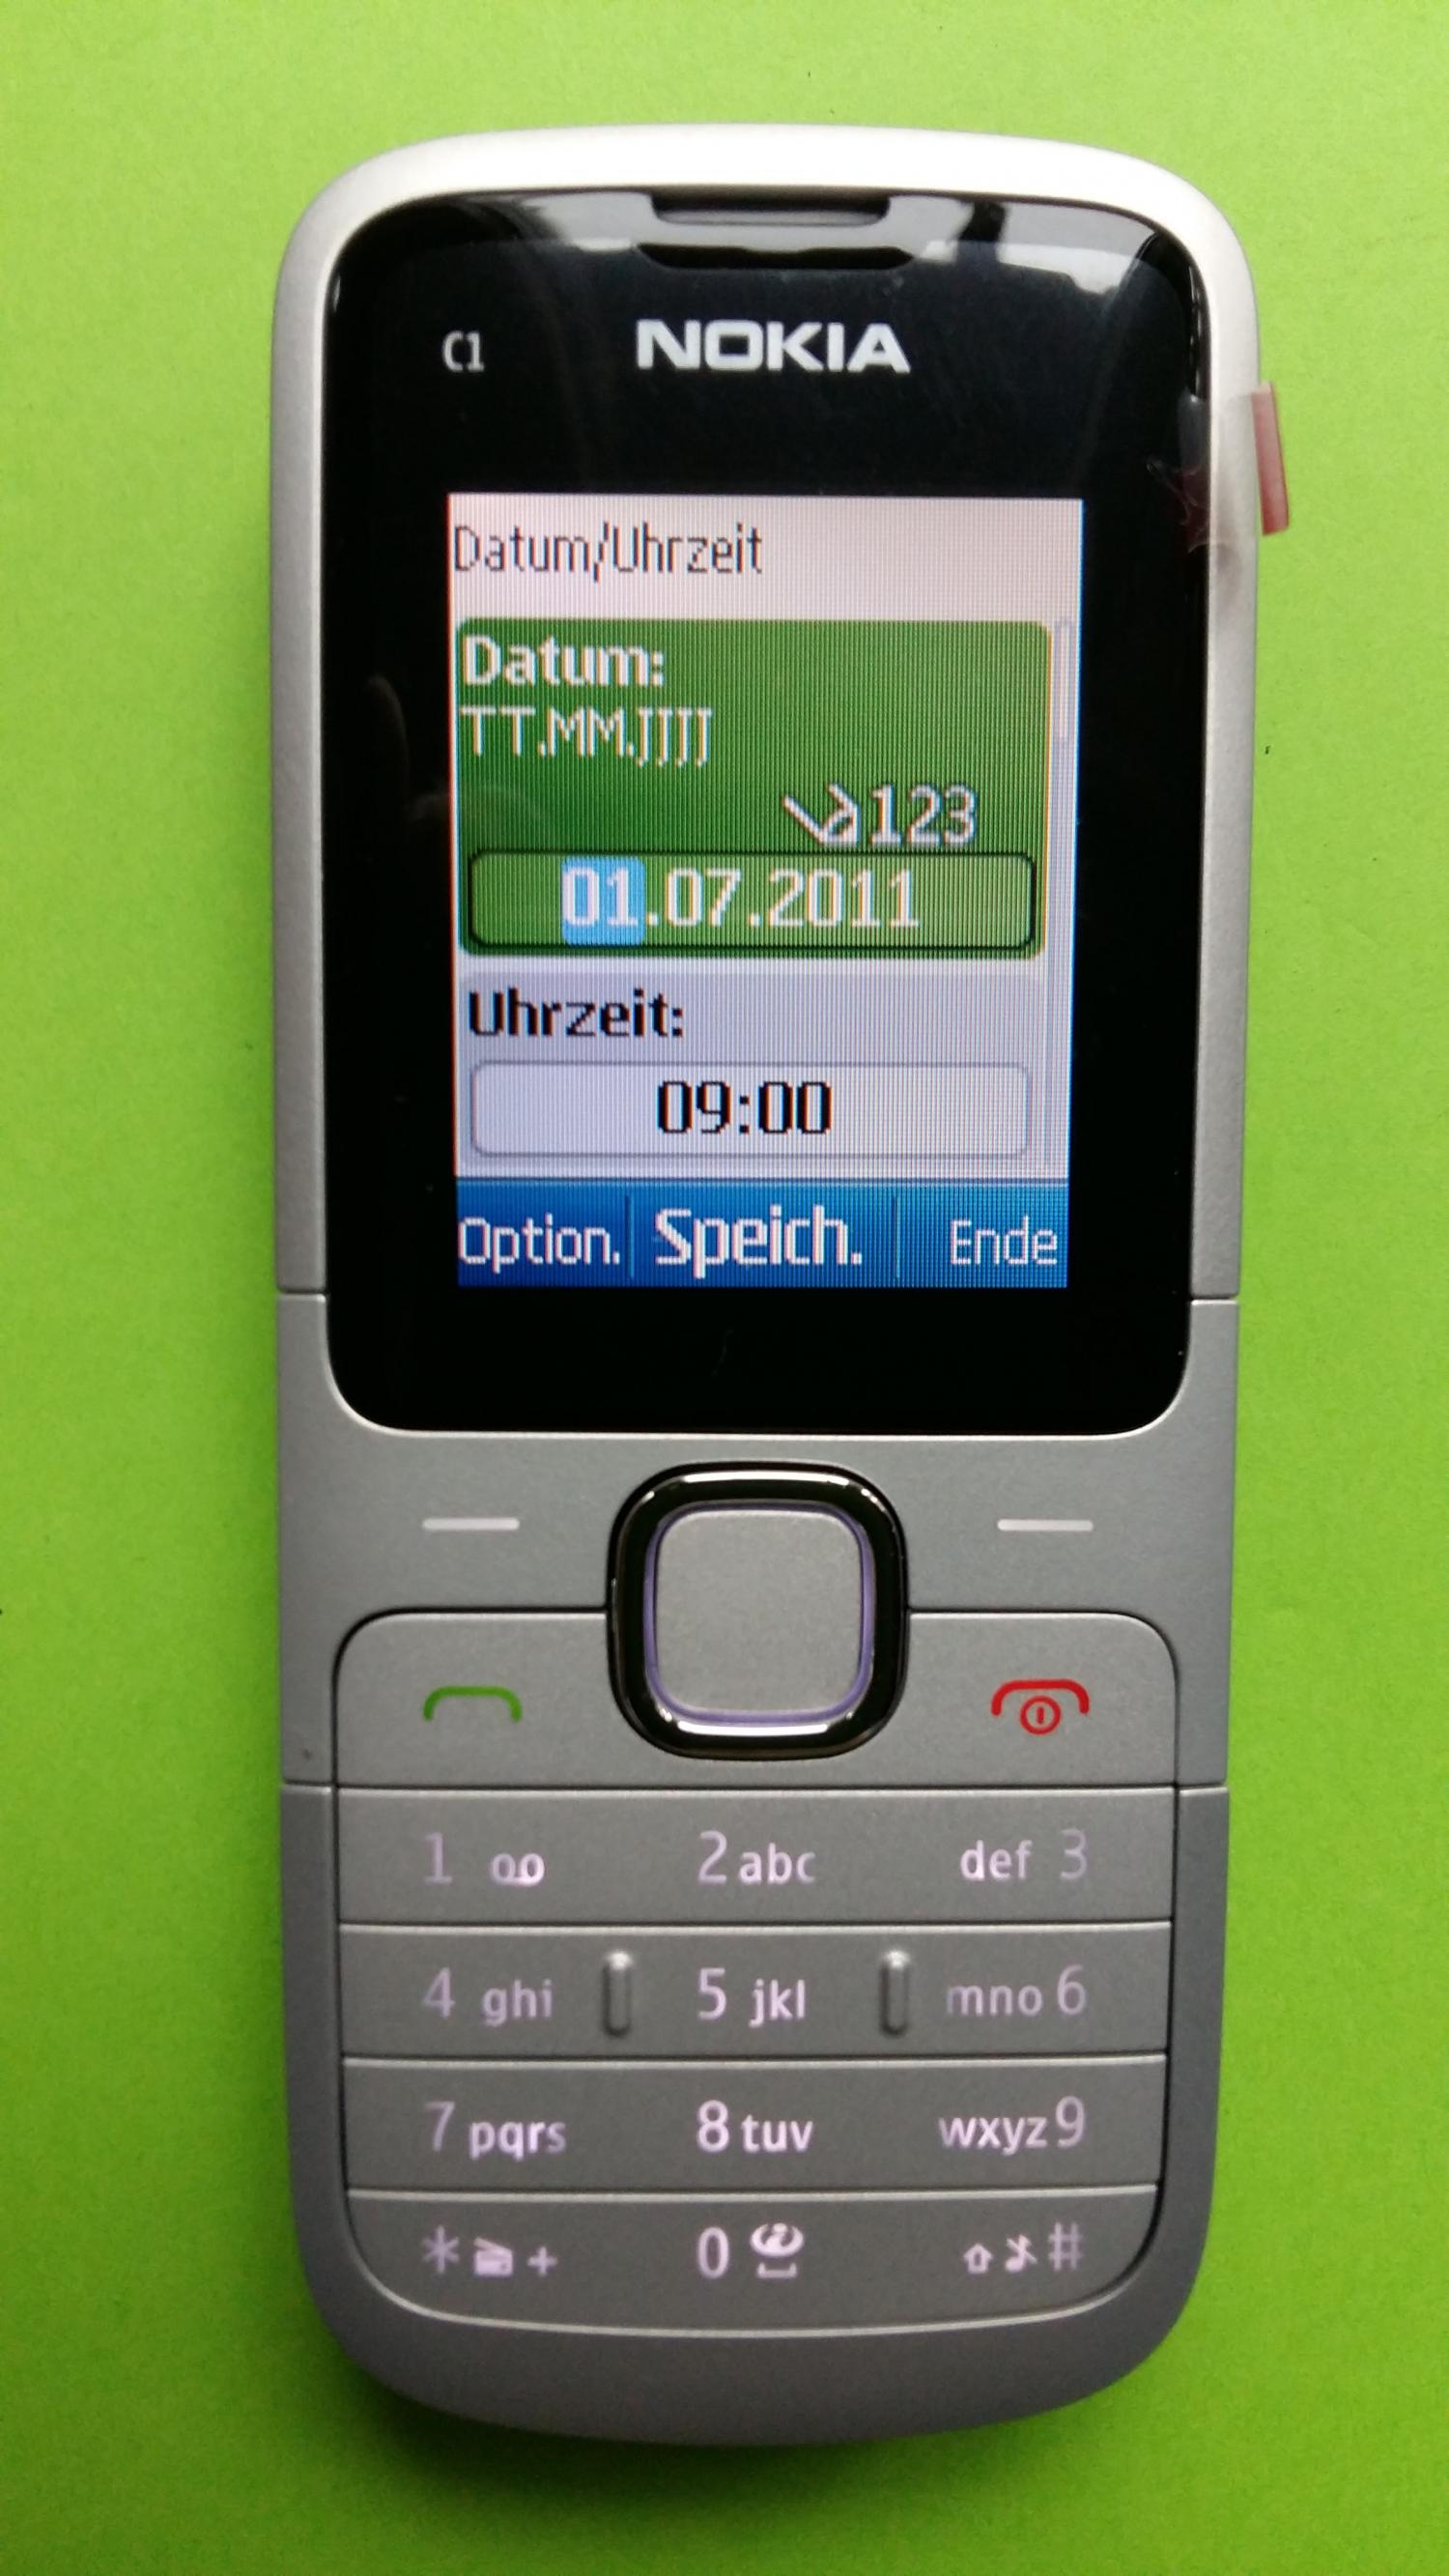 image-7308727-Nokia C1-01 (1)1.jpg